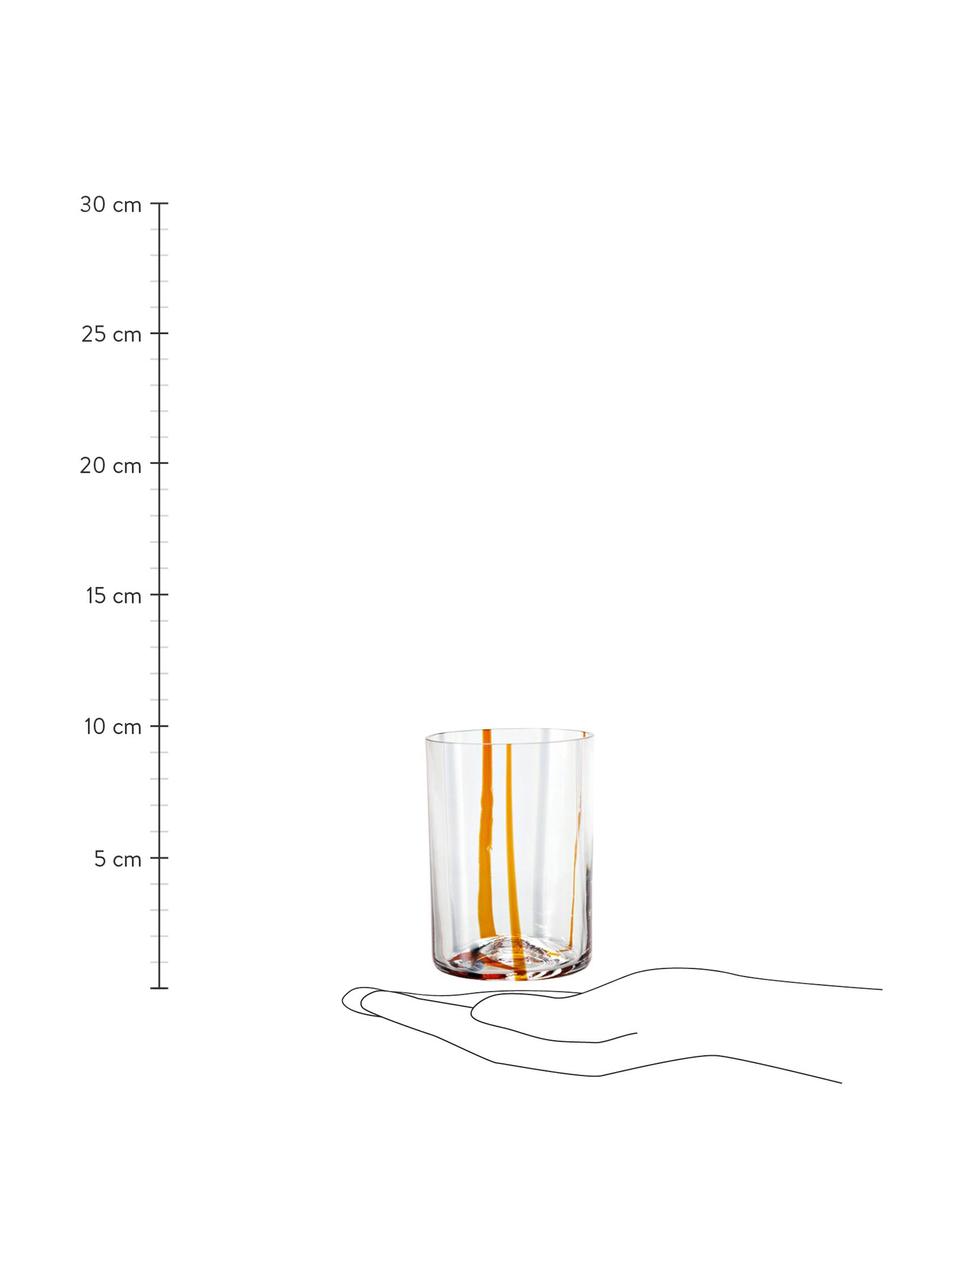 Bicchiere acqua in vetro soffiato Tirache 6 pz, Vetro, Multicolore, Ø 7 x Alt. 10 cm, 350 ml